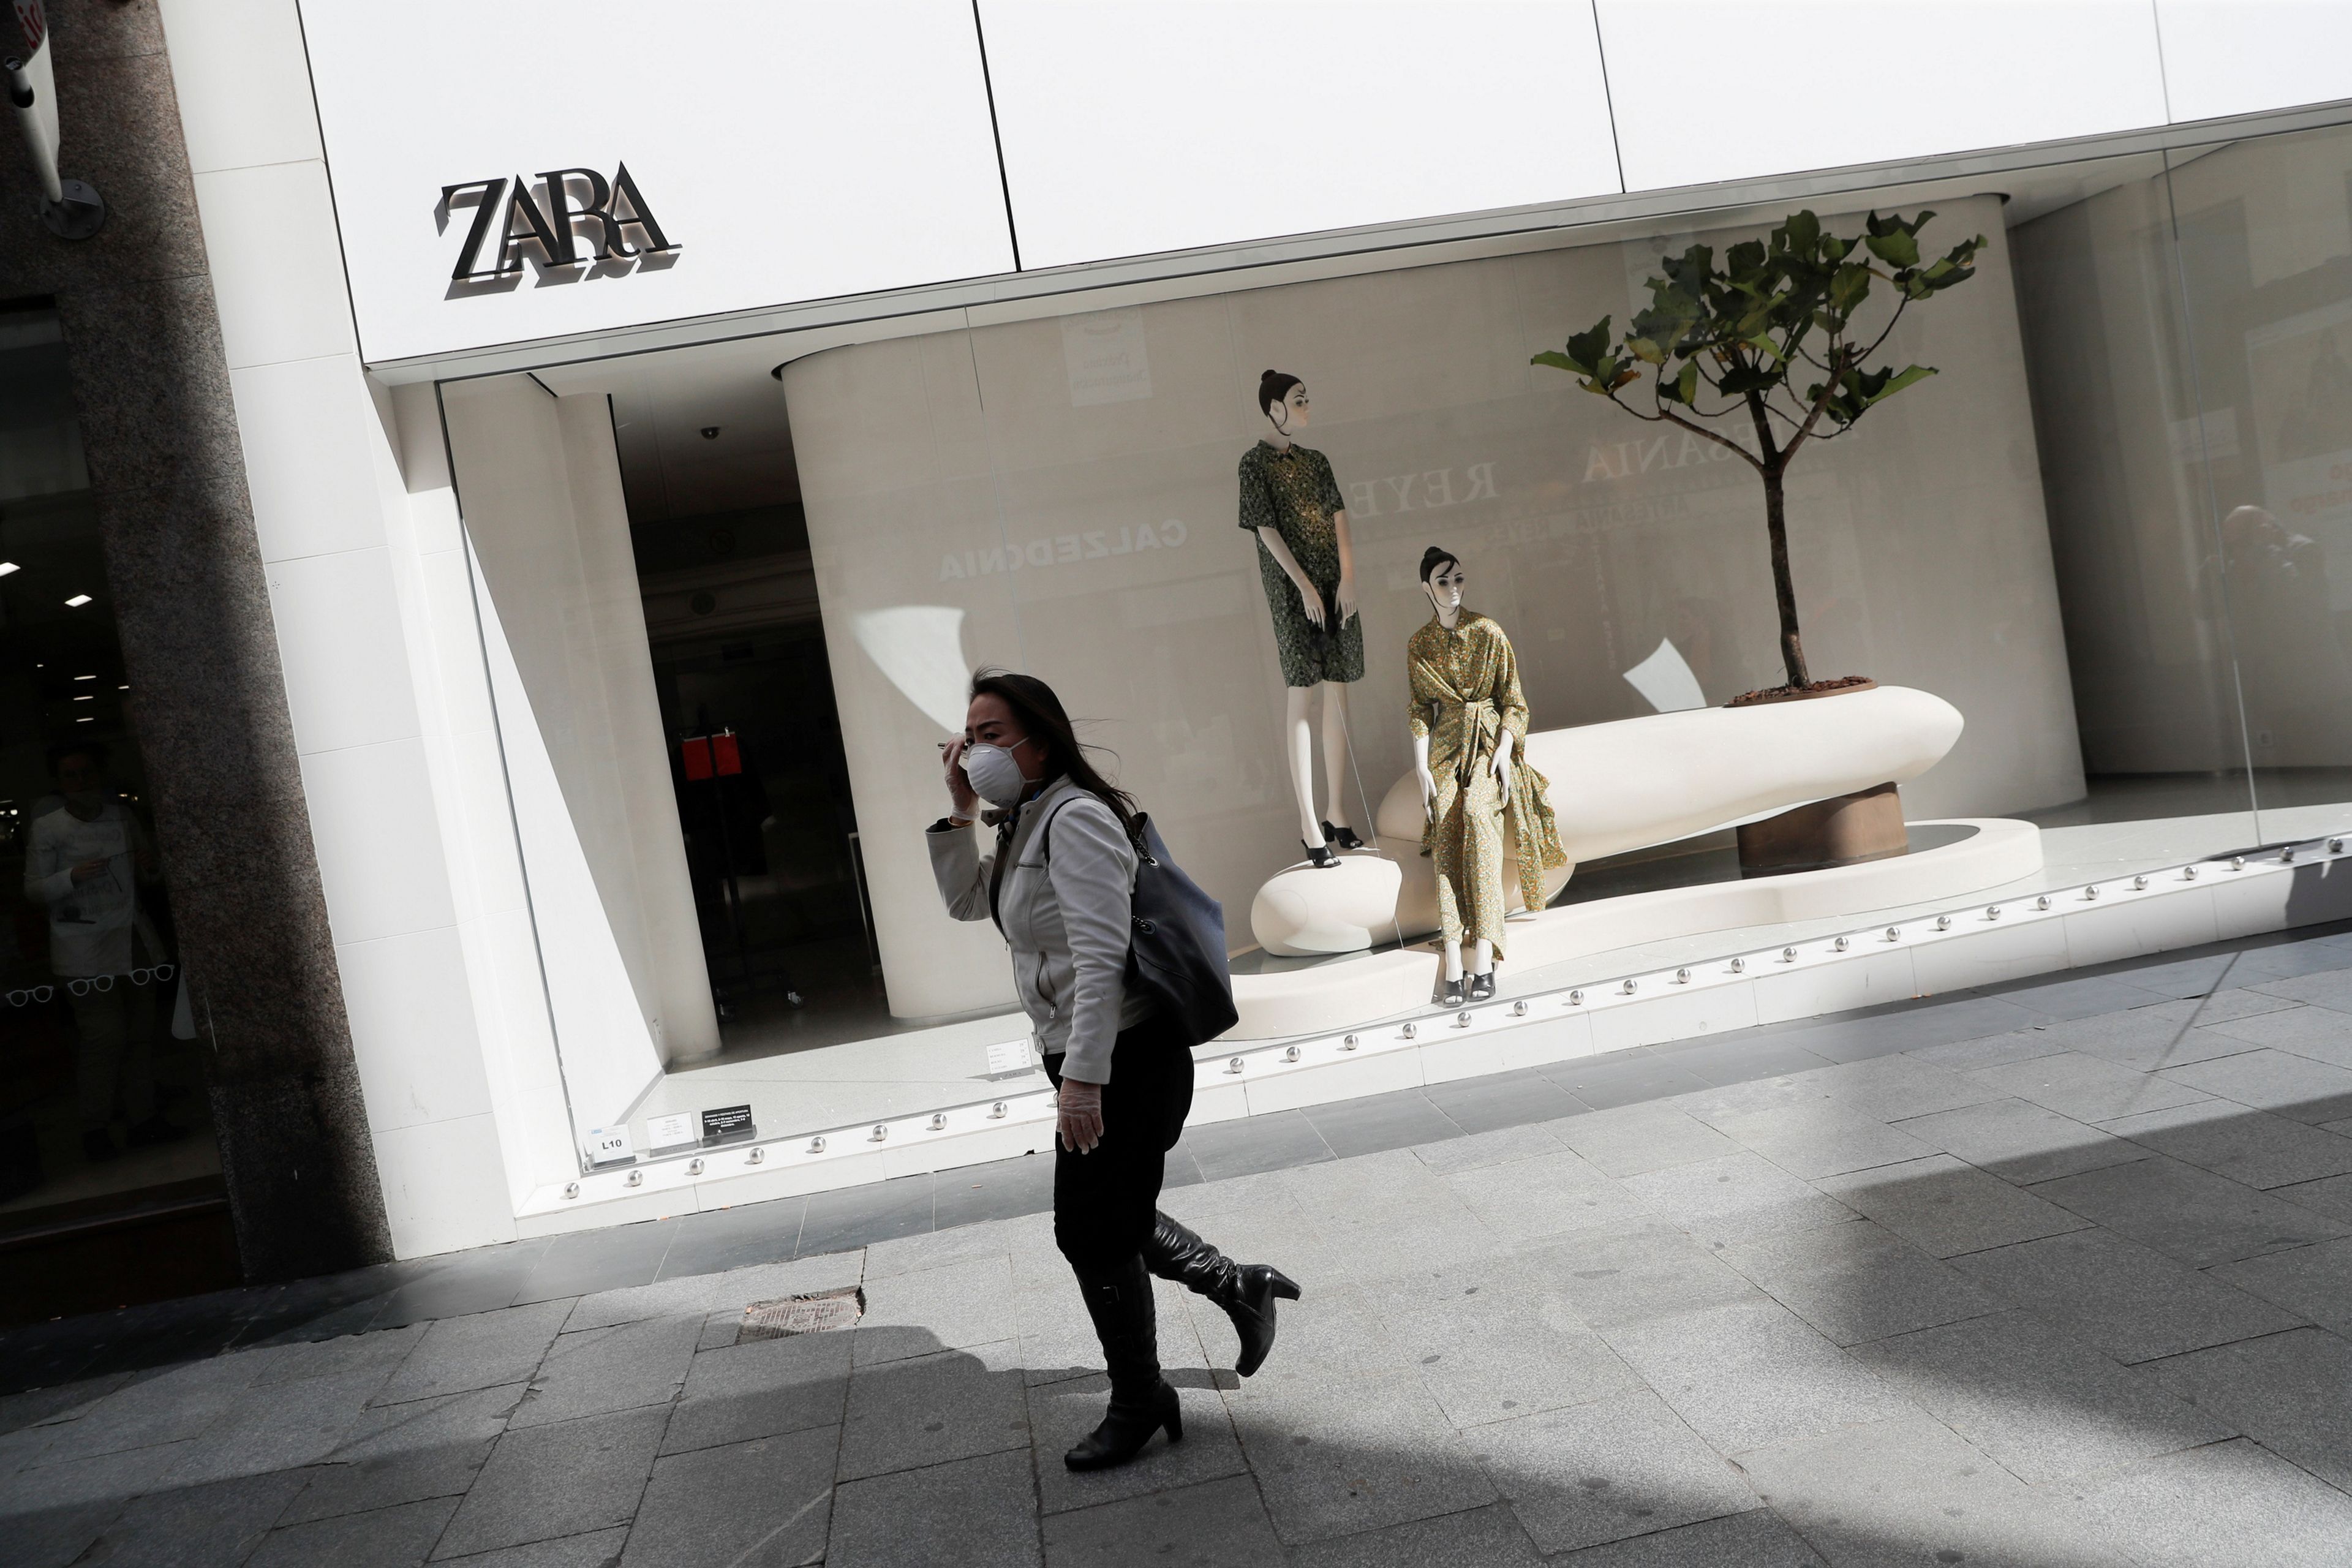 Una mujer con mascarilla camina delante de una tienda de Zara en Madrid durante el periodo de confinamiento.